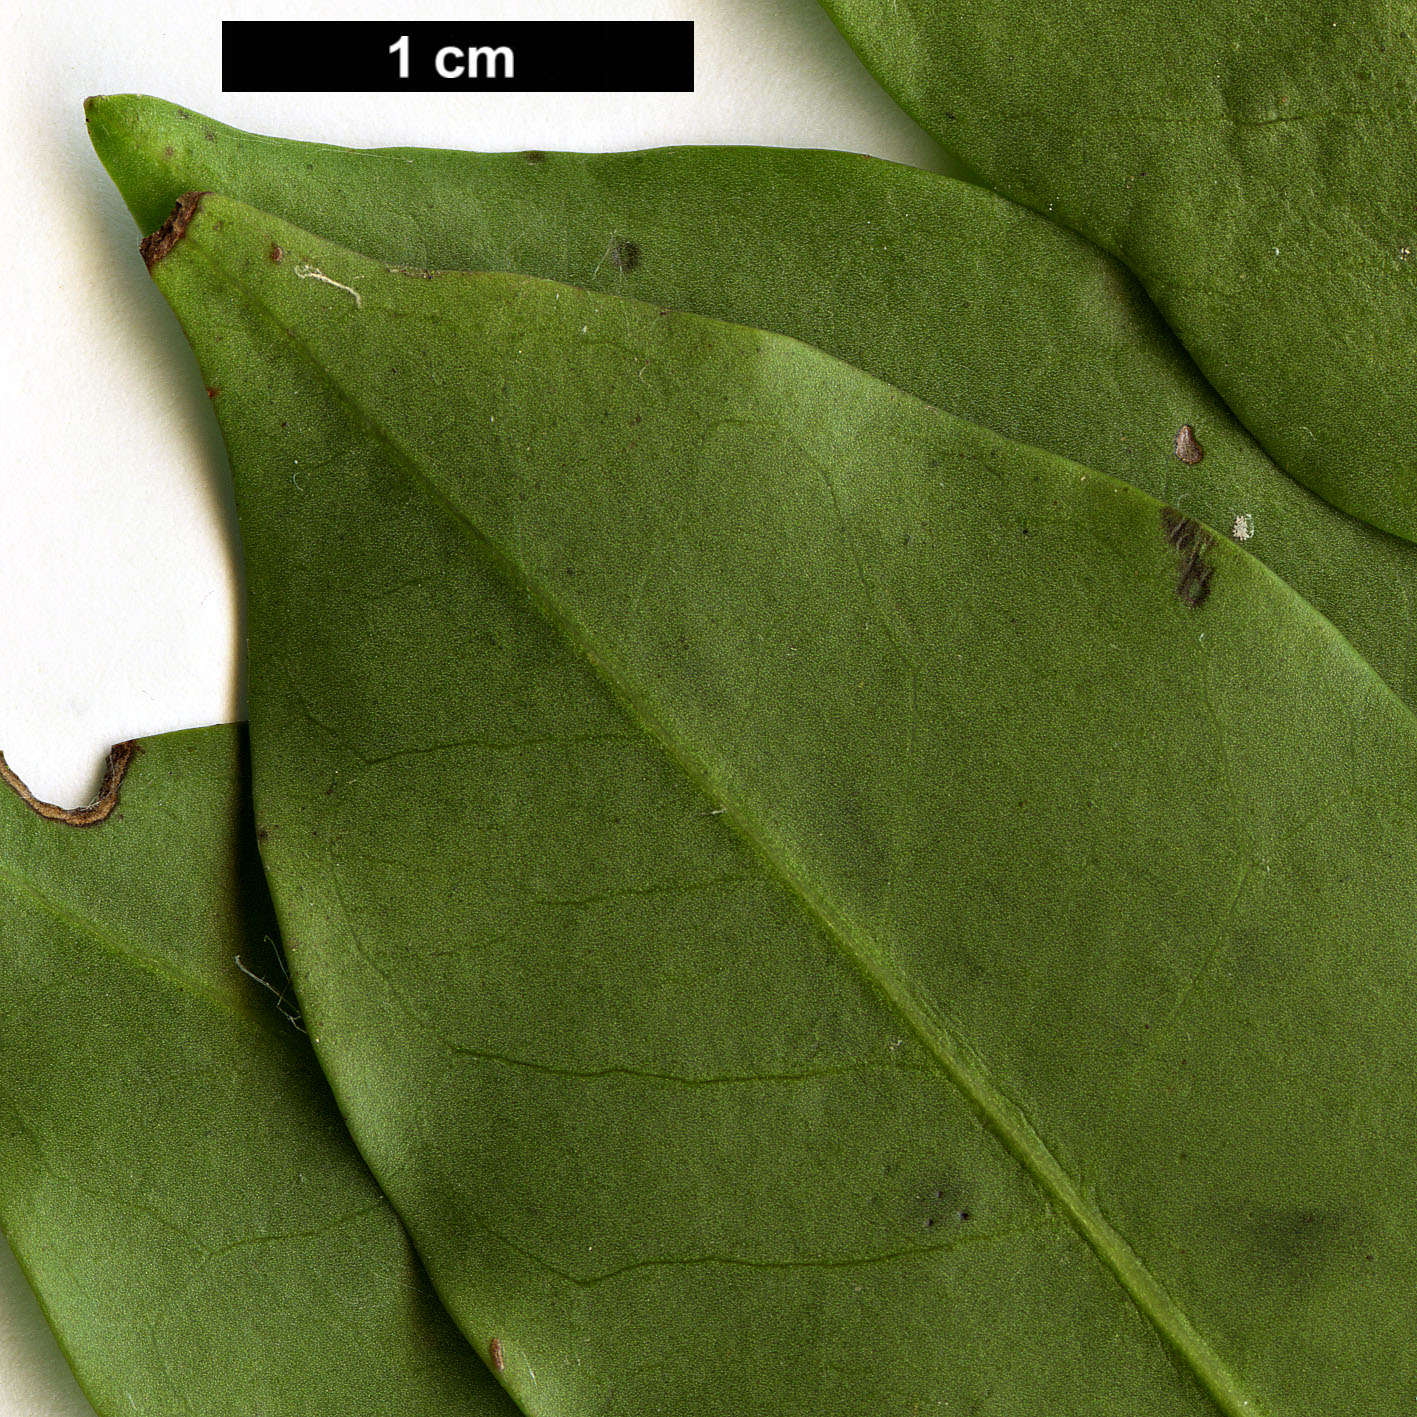 High resolution image: Family: Aquifoliaceae - Genus: Ilex - Taxon: pedunculosa